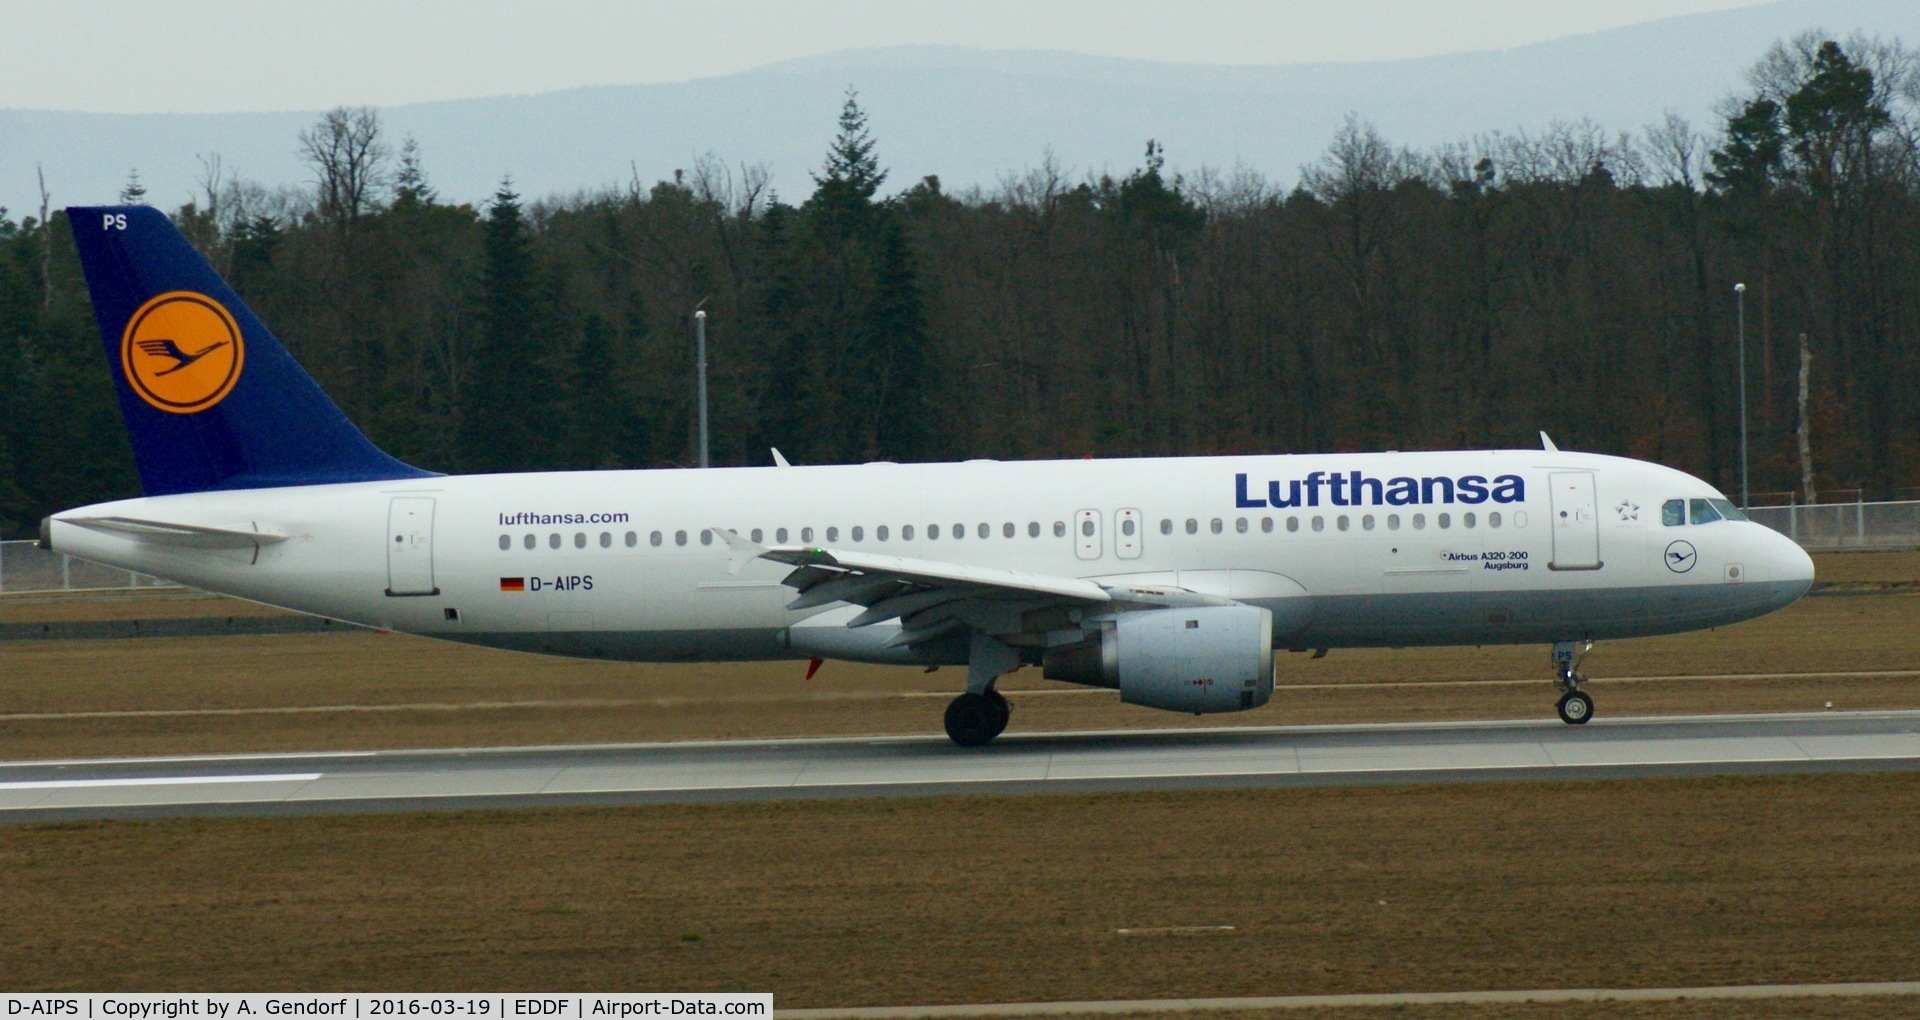 D-AIPS, 1990 Airbus A320-211 C/N 0116, Lufthansa, is here shortly after landing on RWY 25L at Frankfurt Rhein/Main(EDDF)